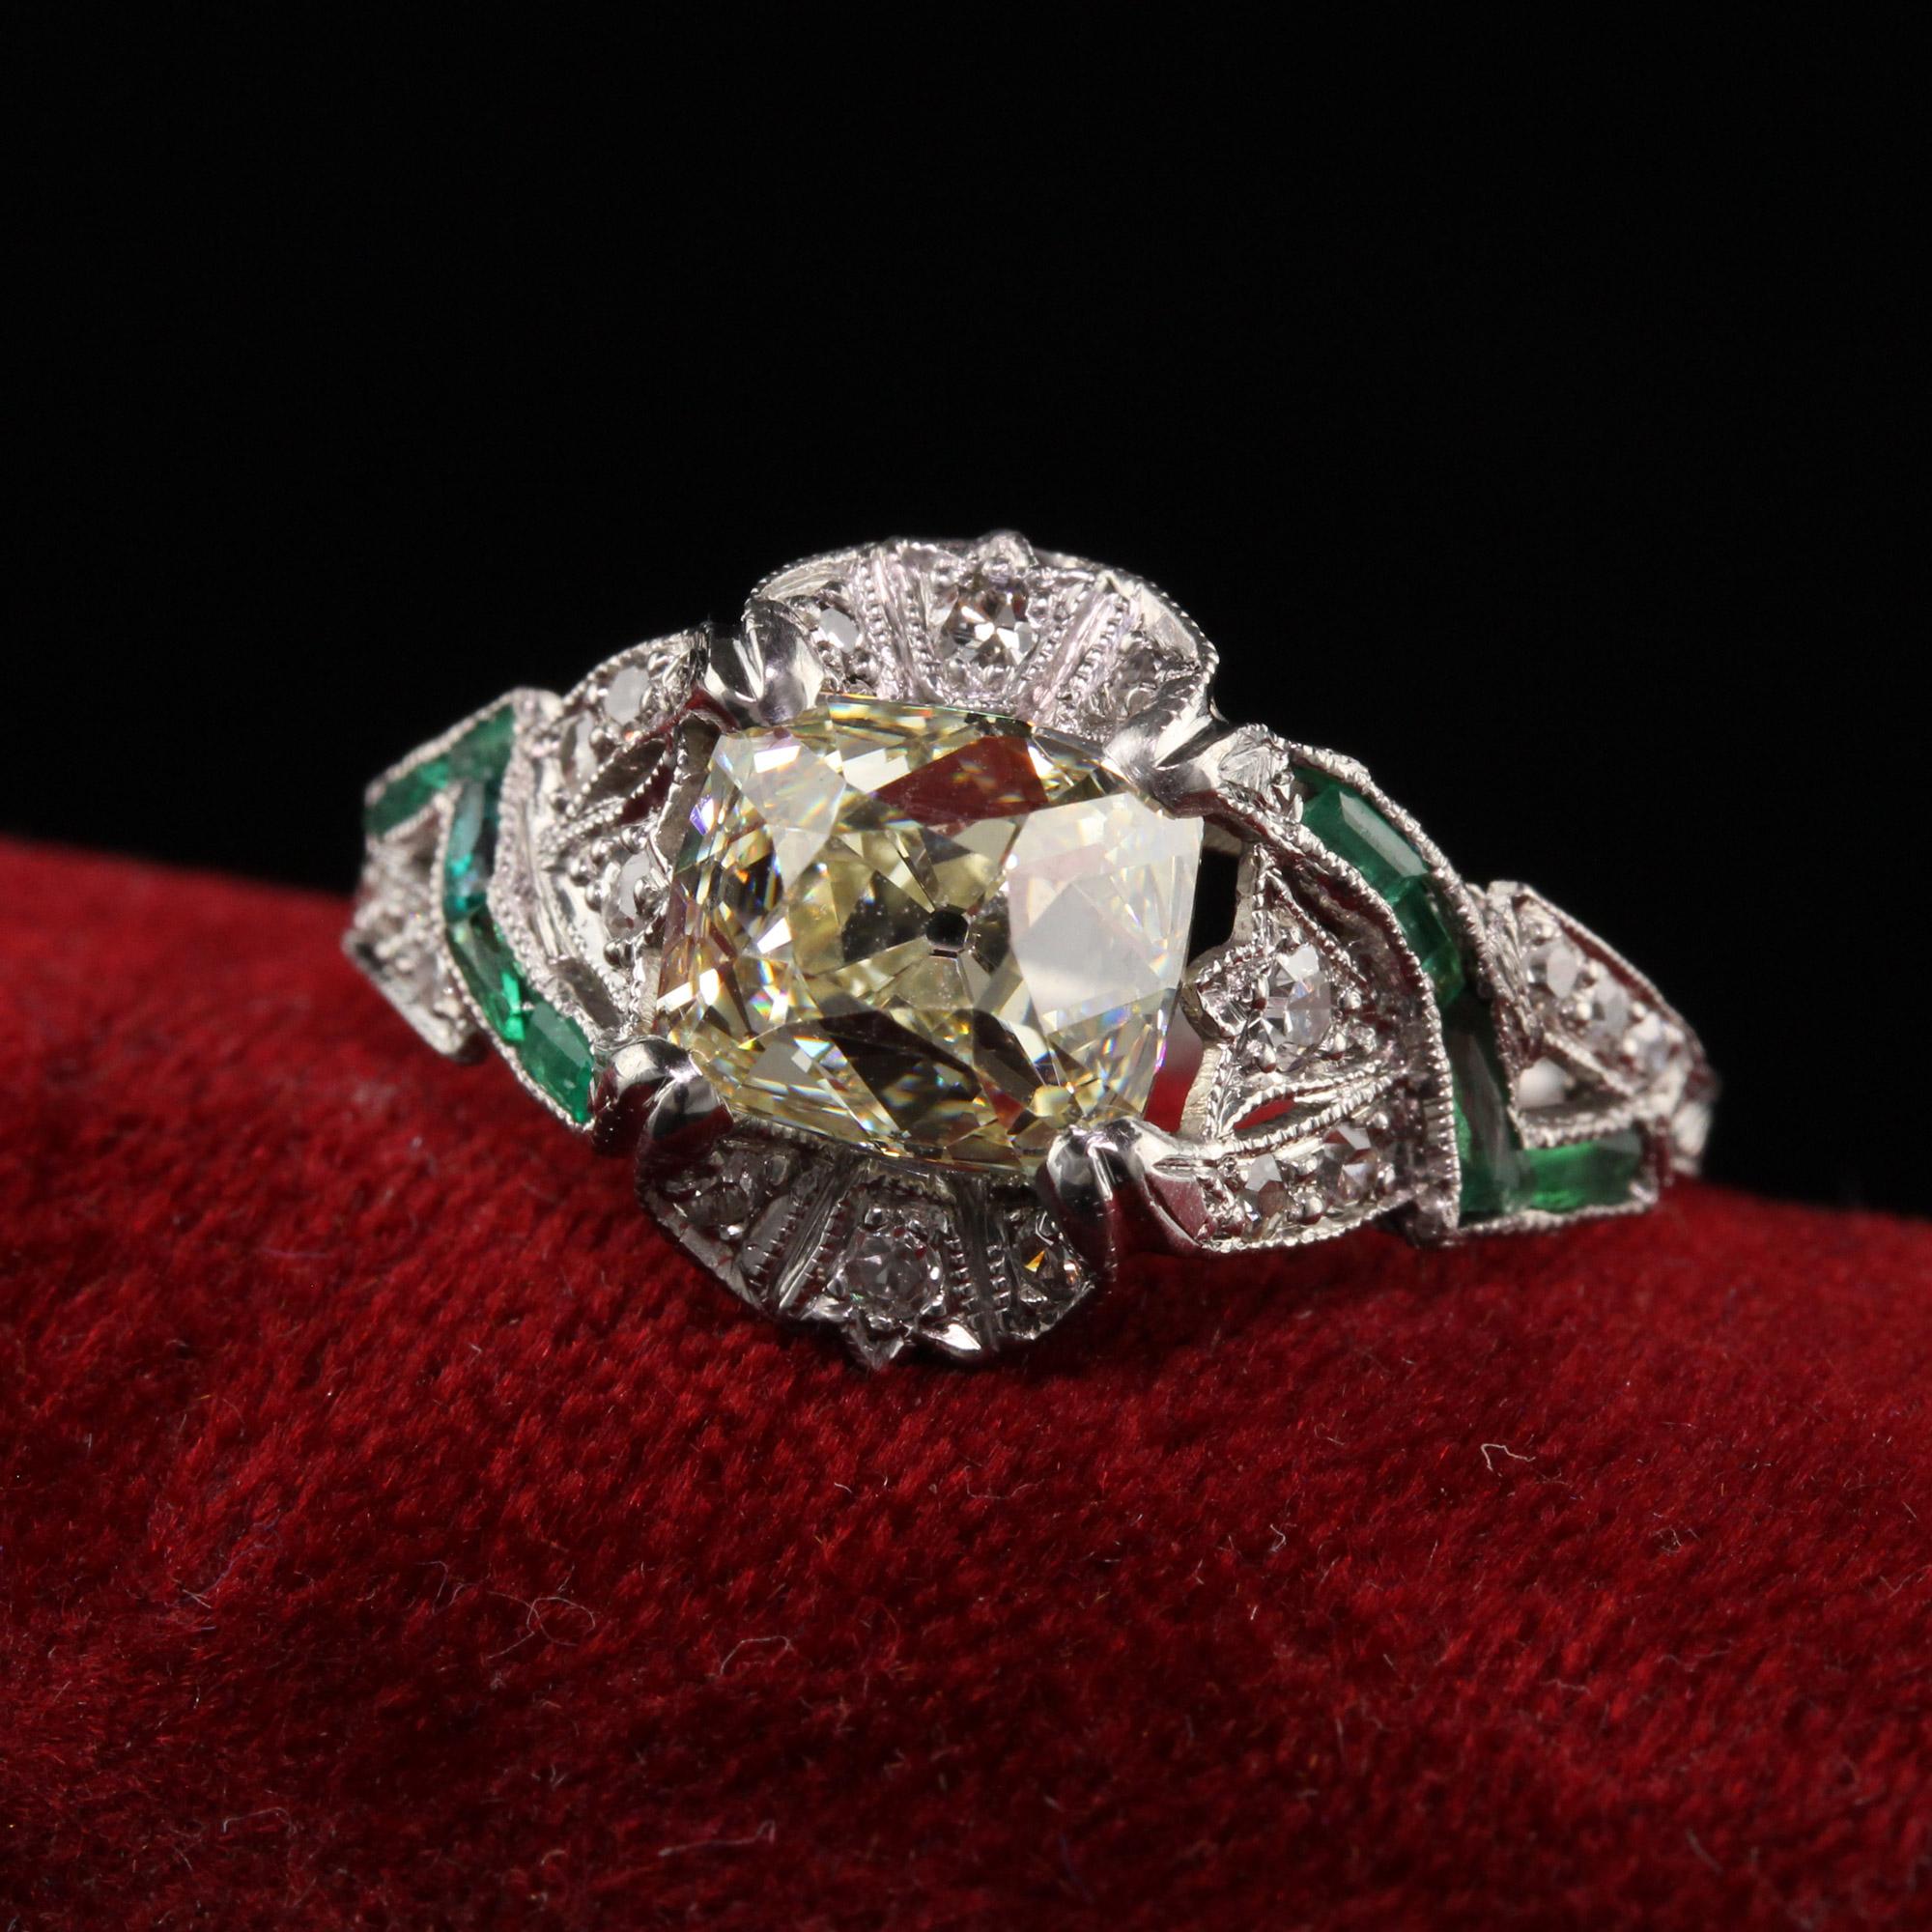 Schöner antiker Art Deco Platin Old Mine Cut Diamant Smaragd Verlobungsring. Dieser wunderschöne Verlobungsring ist aus Platin gefertigt. In der Mitte befindet sich ein großer Diamant im Altminenschliff, der in eine wunderschöne filigrane Fassung